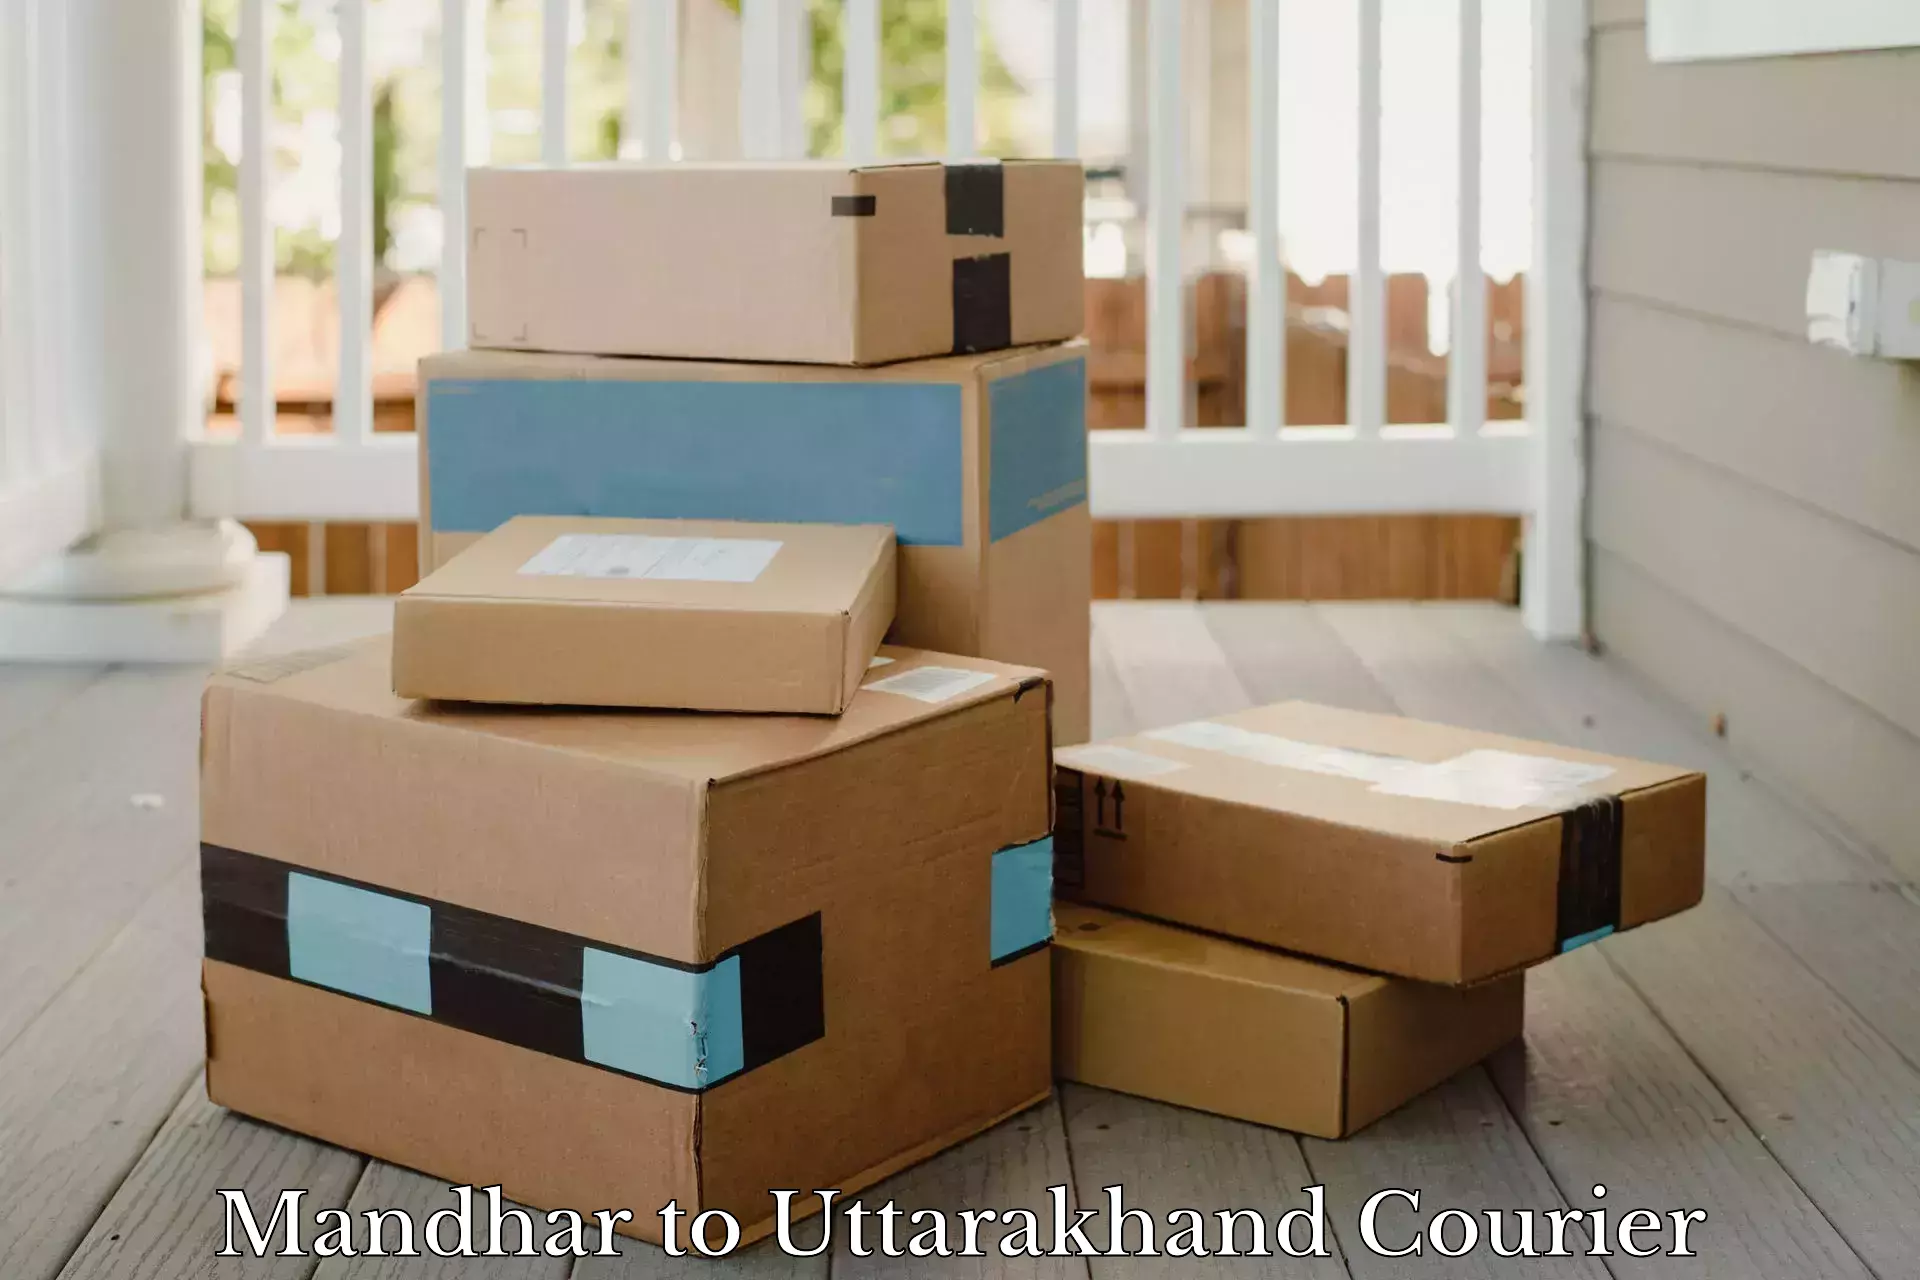 Global courier networks Mandhar to Uttarakhand